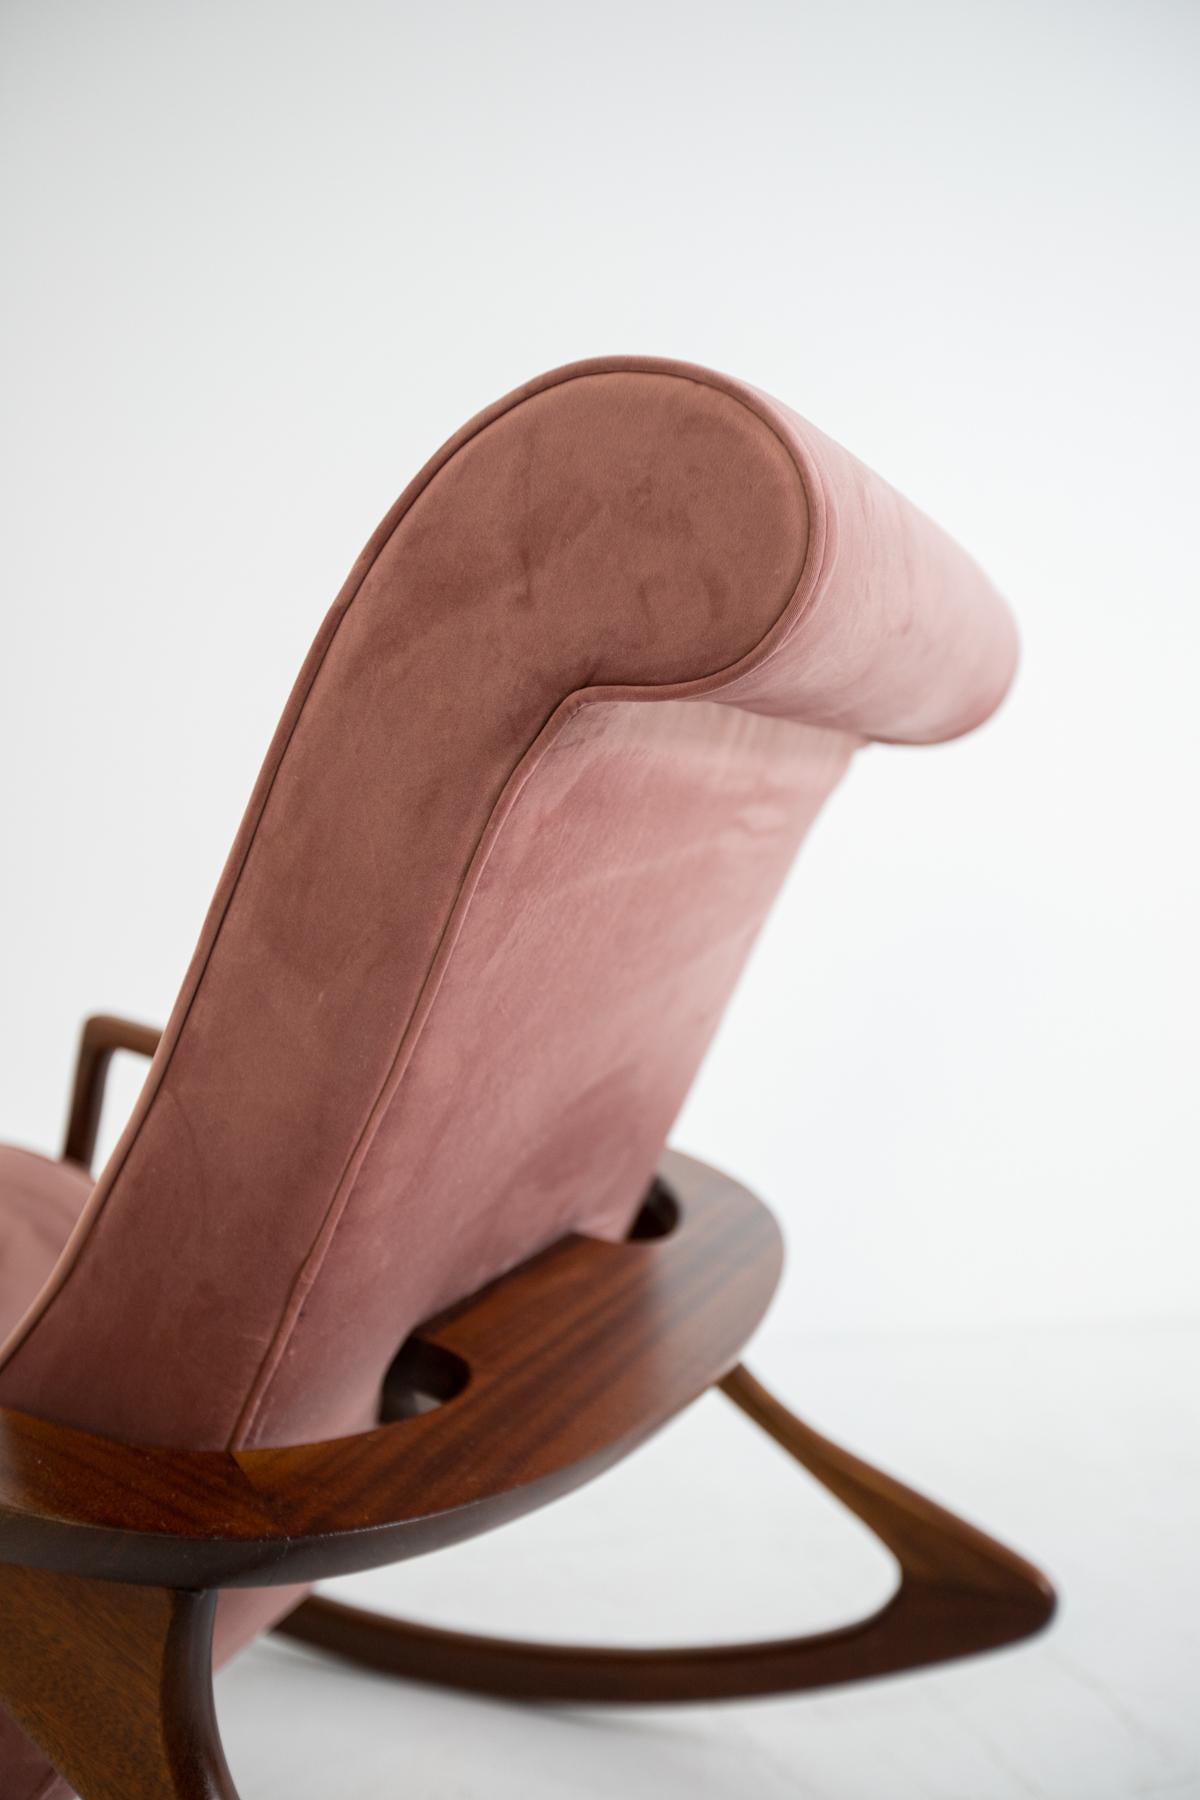 American Vintage Rocking Chair in Pink Velvet, Restored 1